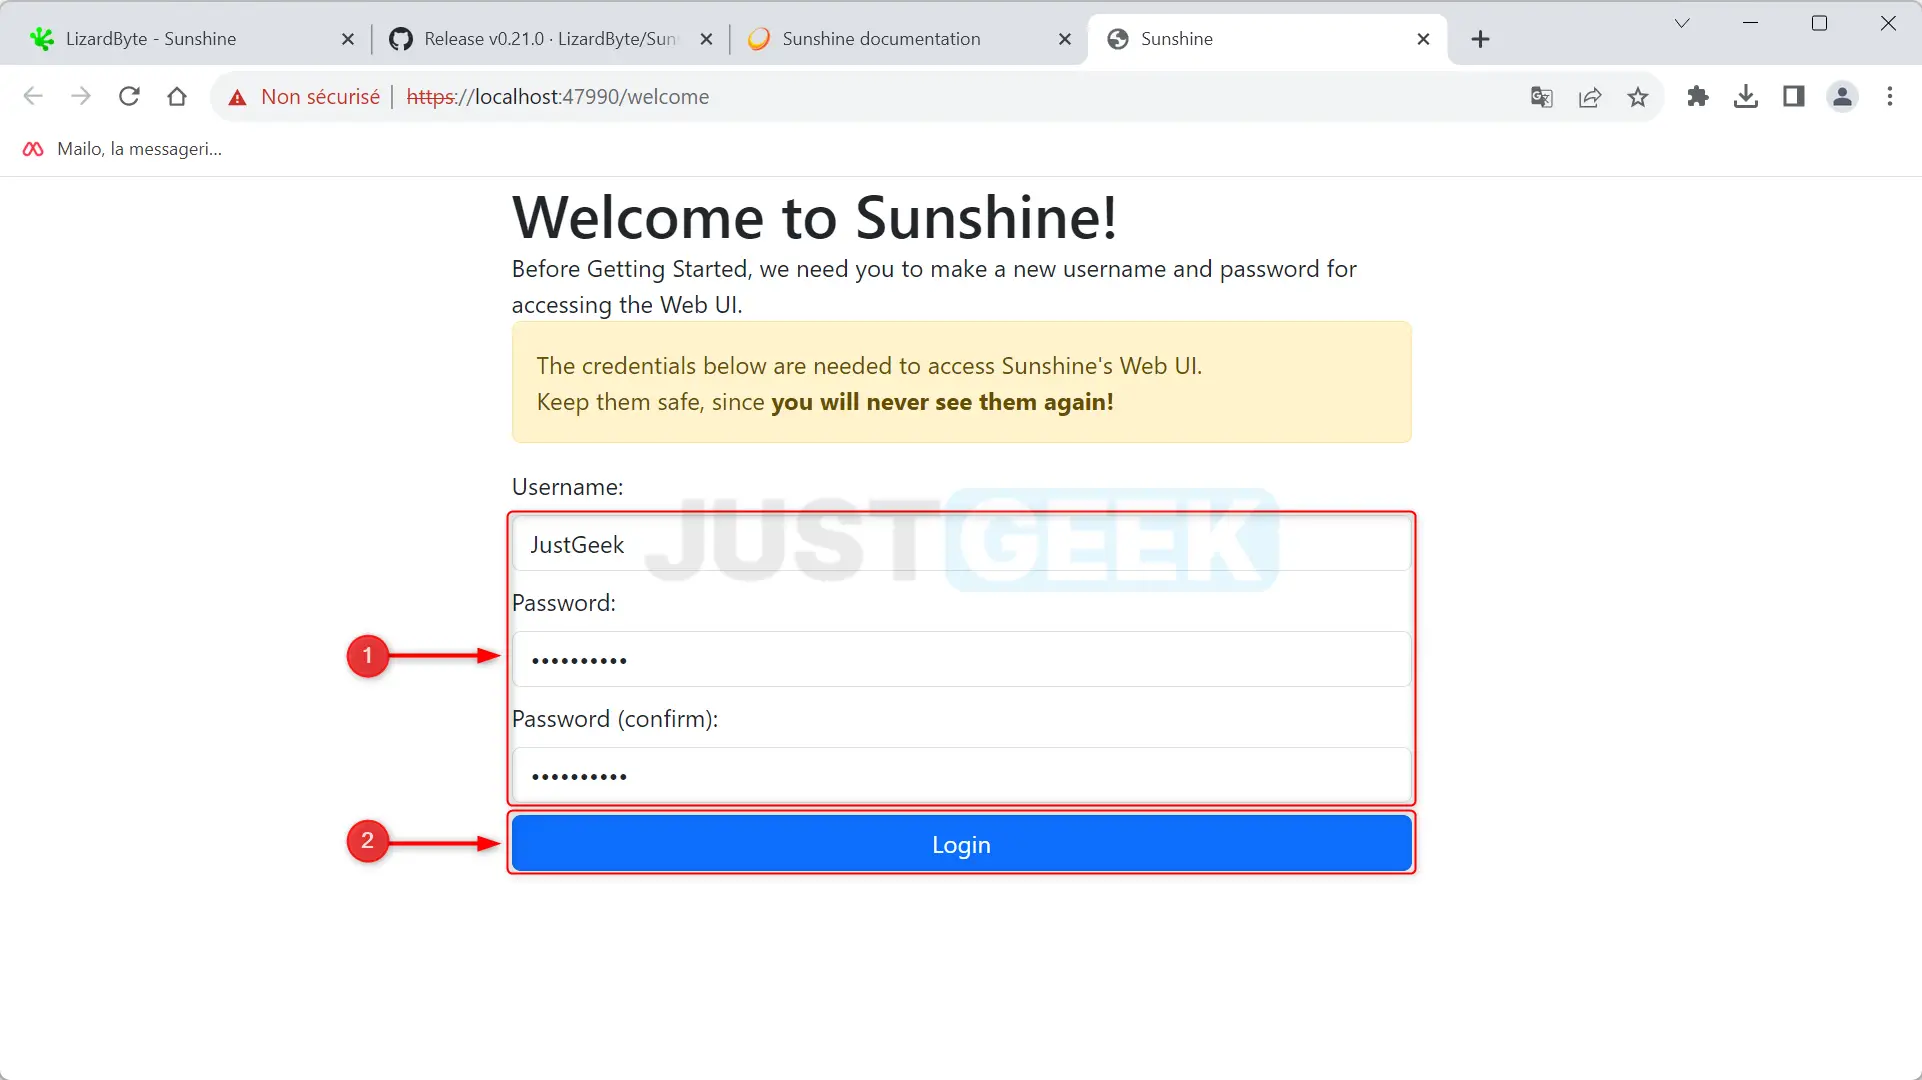 Champs de nom d'utilisateur et de mot de passe sur la page de configuration de Sunshine